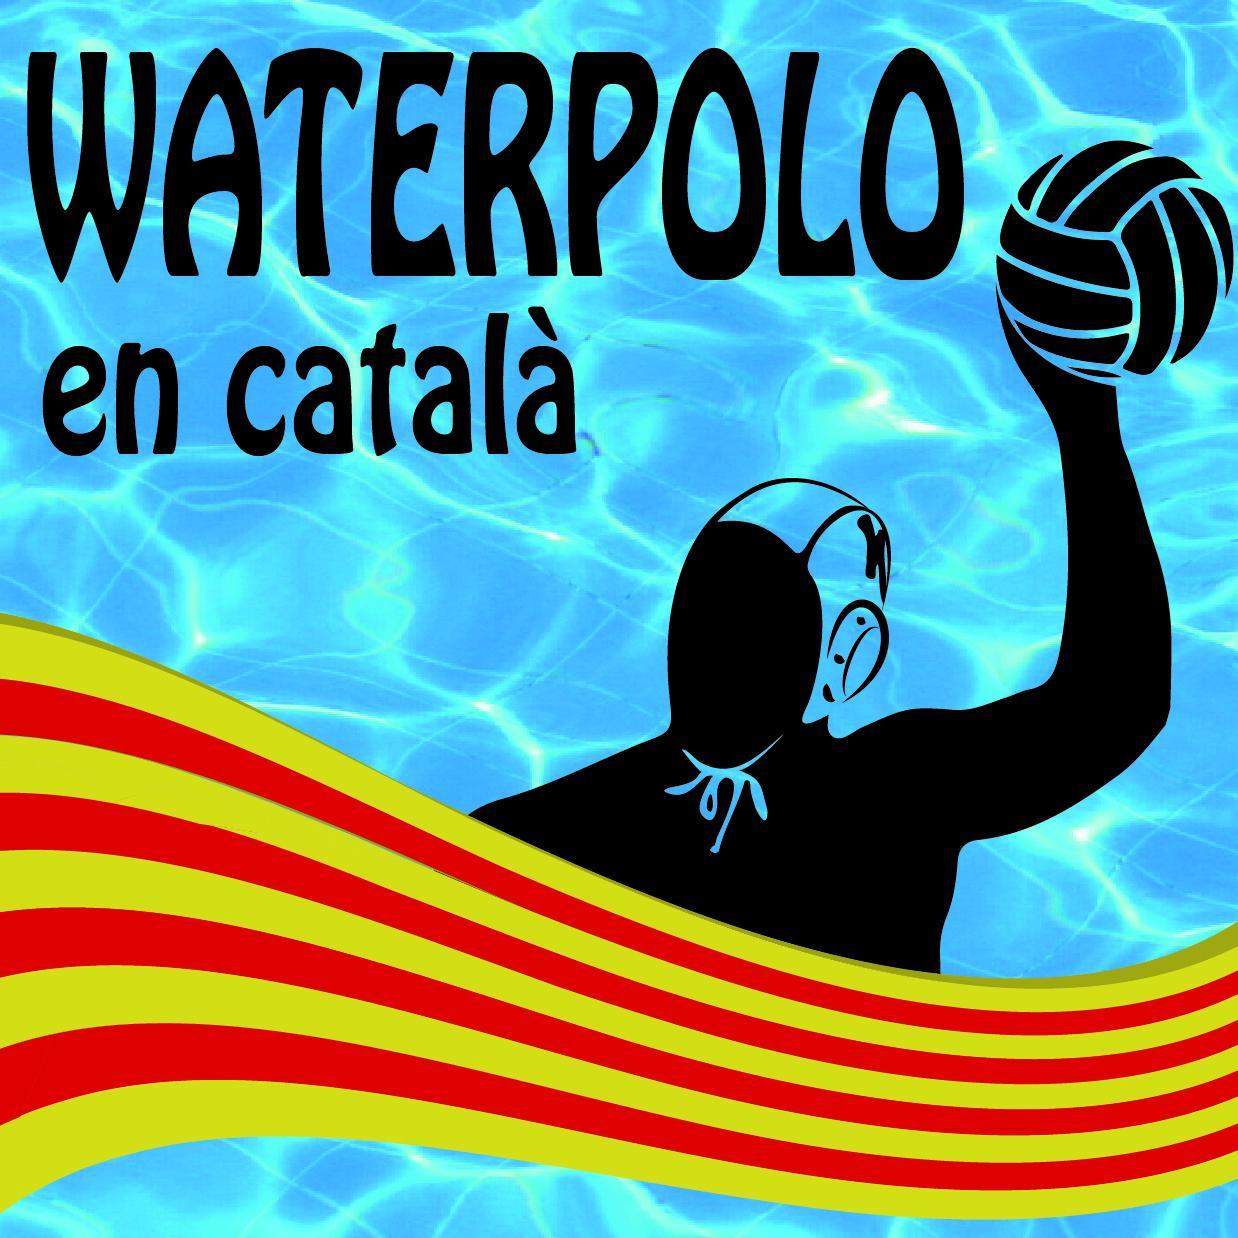 Reflexions, retransmissions i cròniques del waterpolo a Catalunya. El que escric són opinions meves i només meves. #WaterpoloNonStop